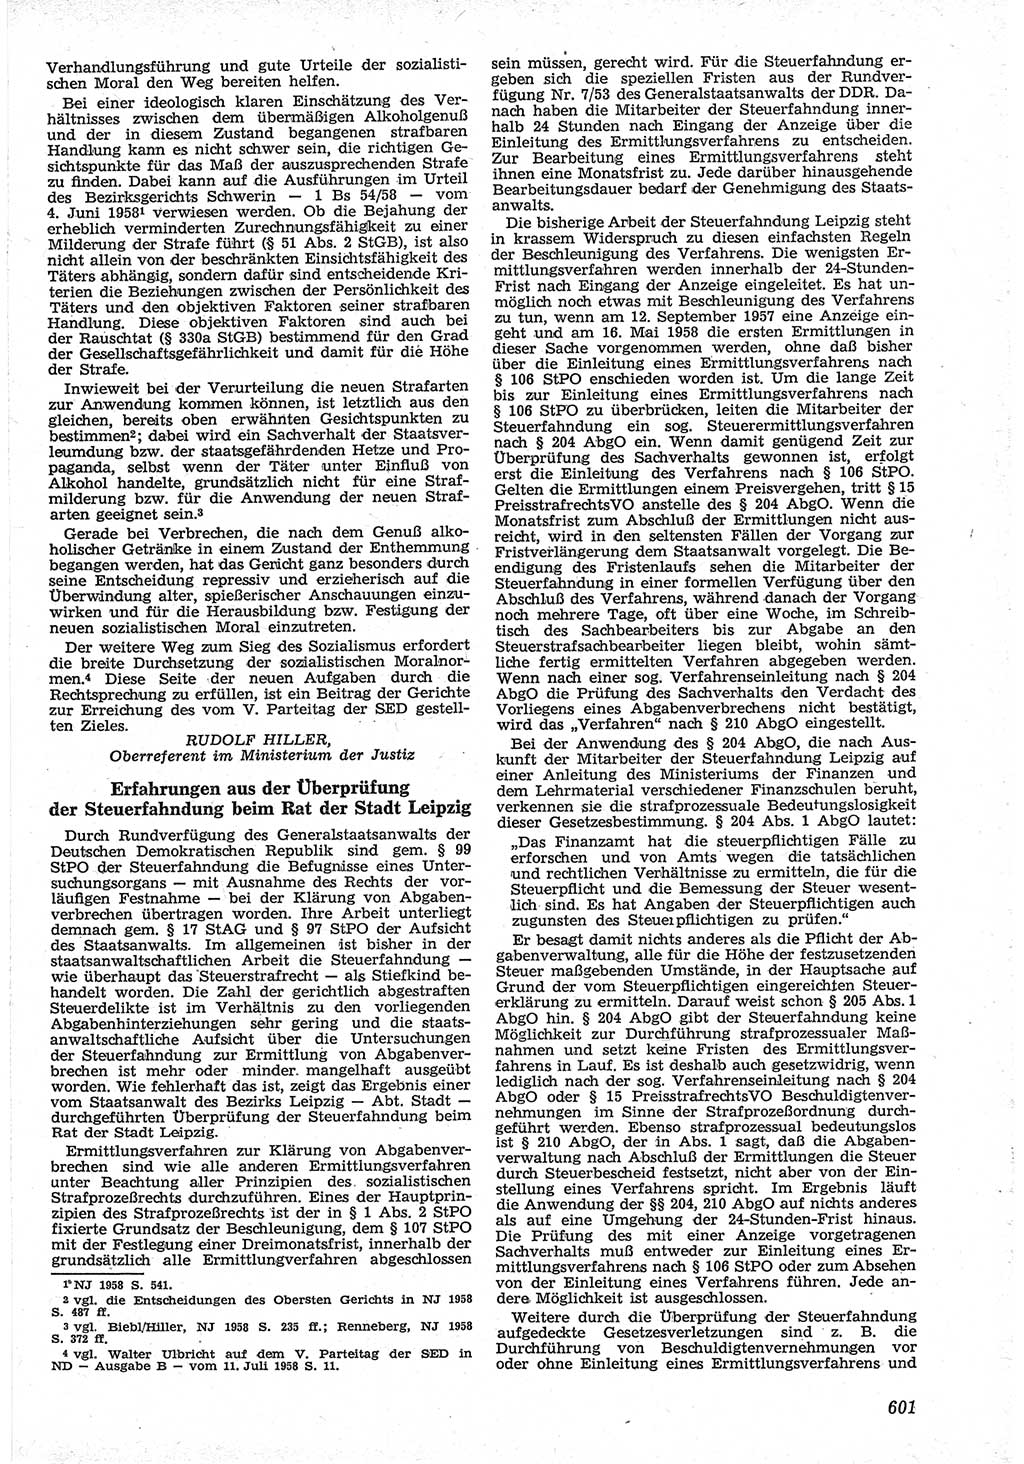 Neue Justiz (NJ), Zeitschrift für Recht und Rechtswissenschaft [Deutsche Demokratische Republik (DDR)], 12. Jahrgang 1958, Seite 601 (NJ DDR 1958, S. 601)